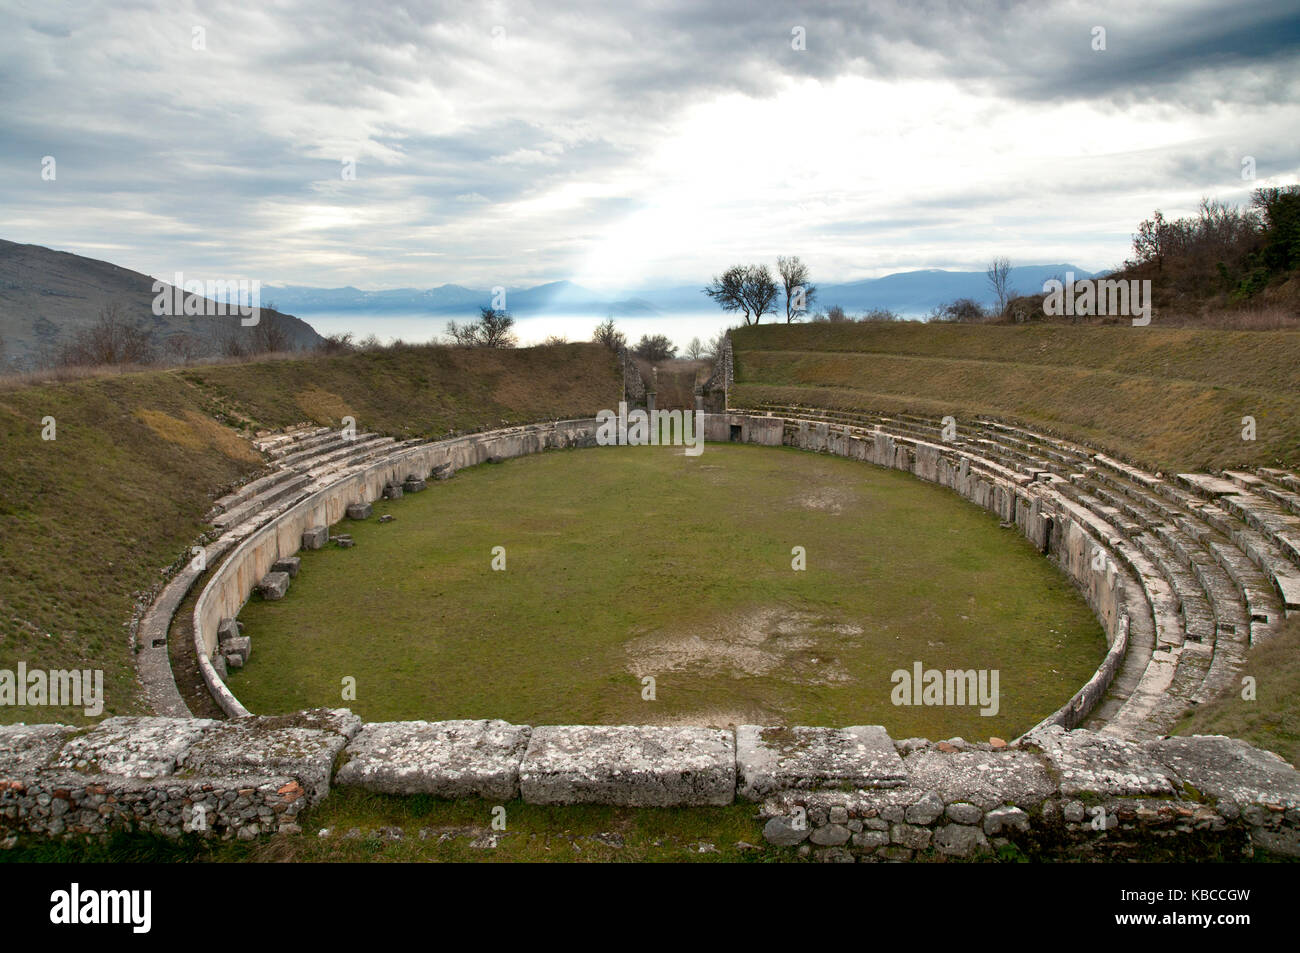 Vue de l'ancien amphithéâtre romain de Alba Fucens, Italie, datant de la première moitié du premier siècle de notre ère, avec plateau de Fucino en arrière-plan Banque D'Images